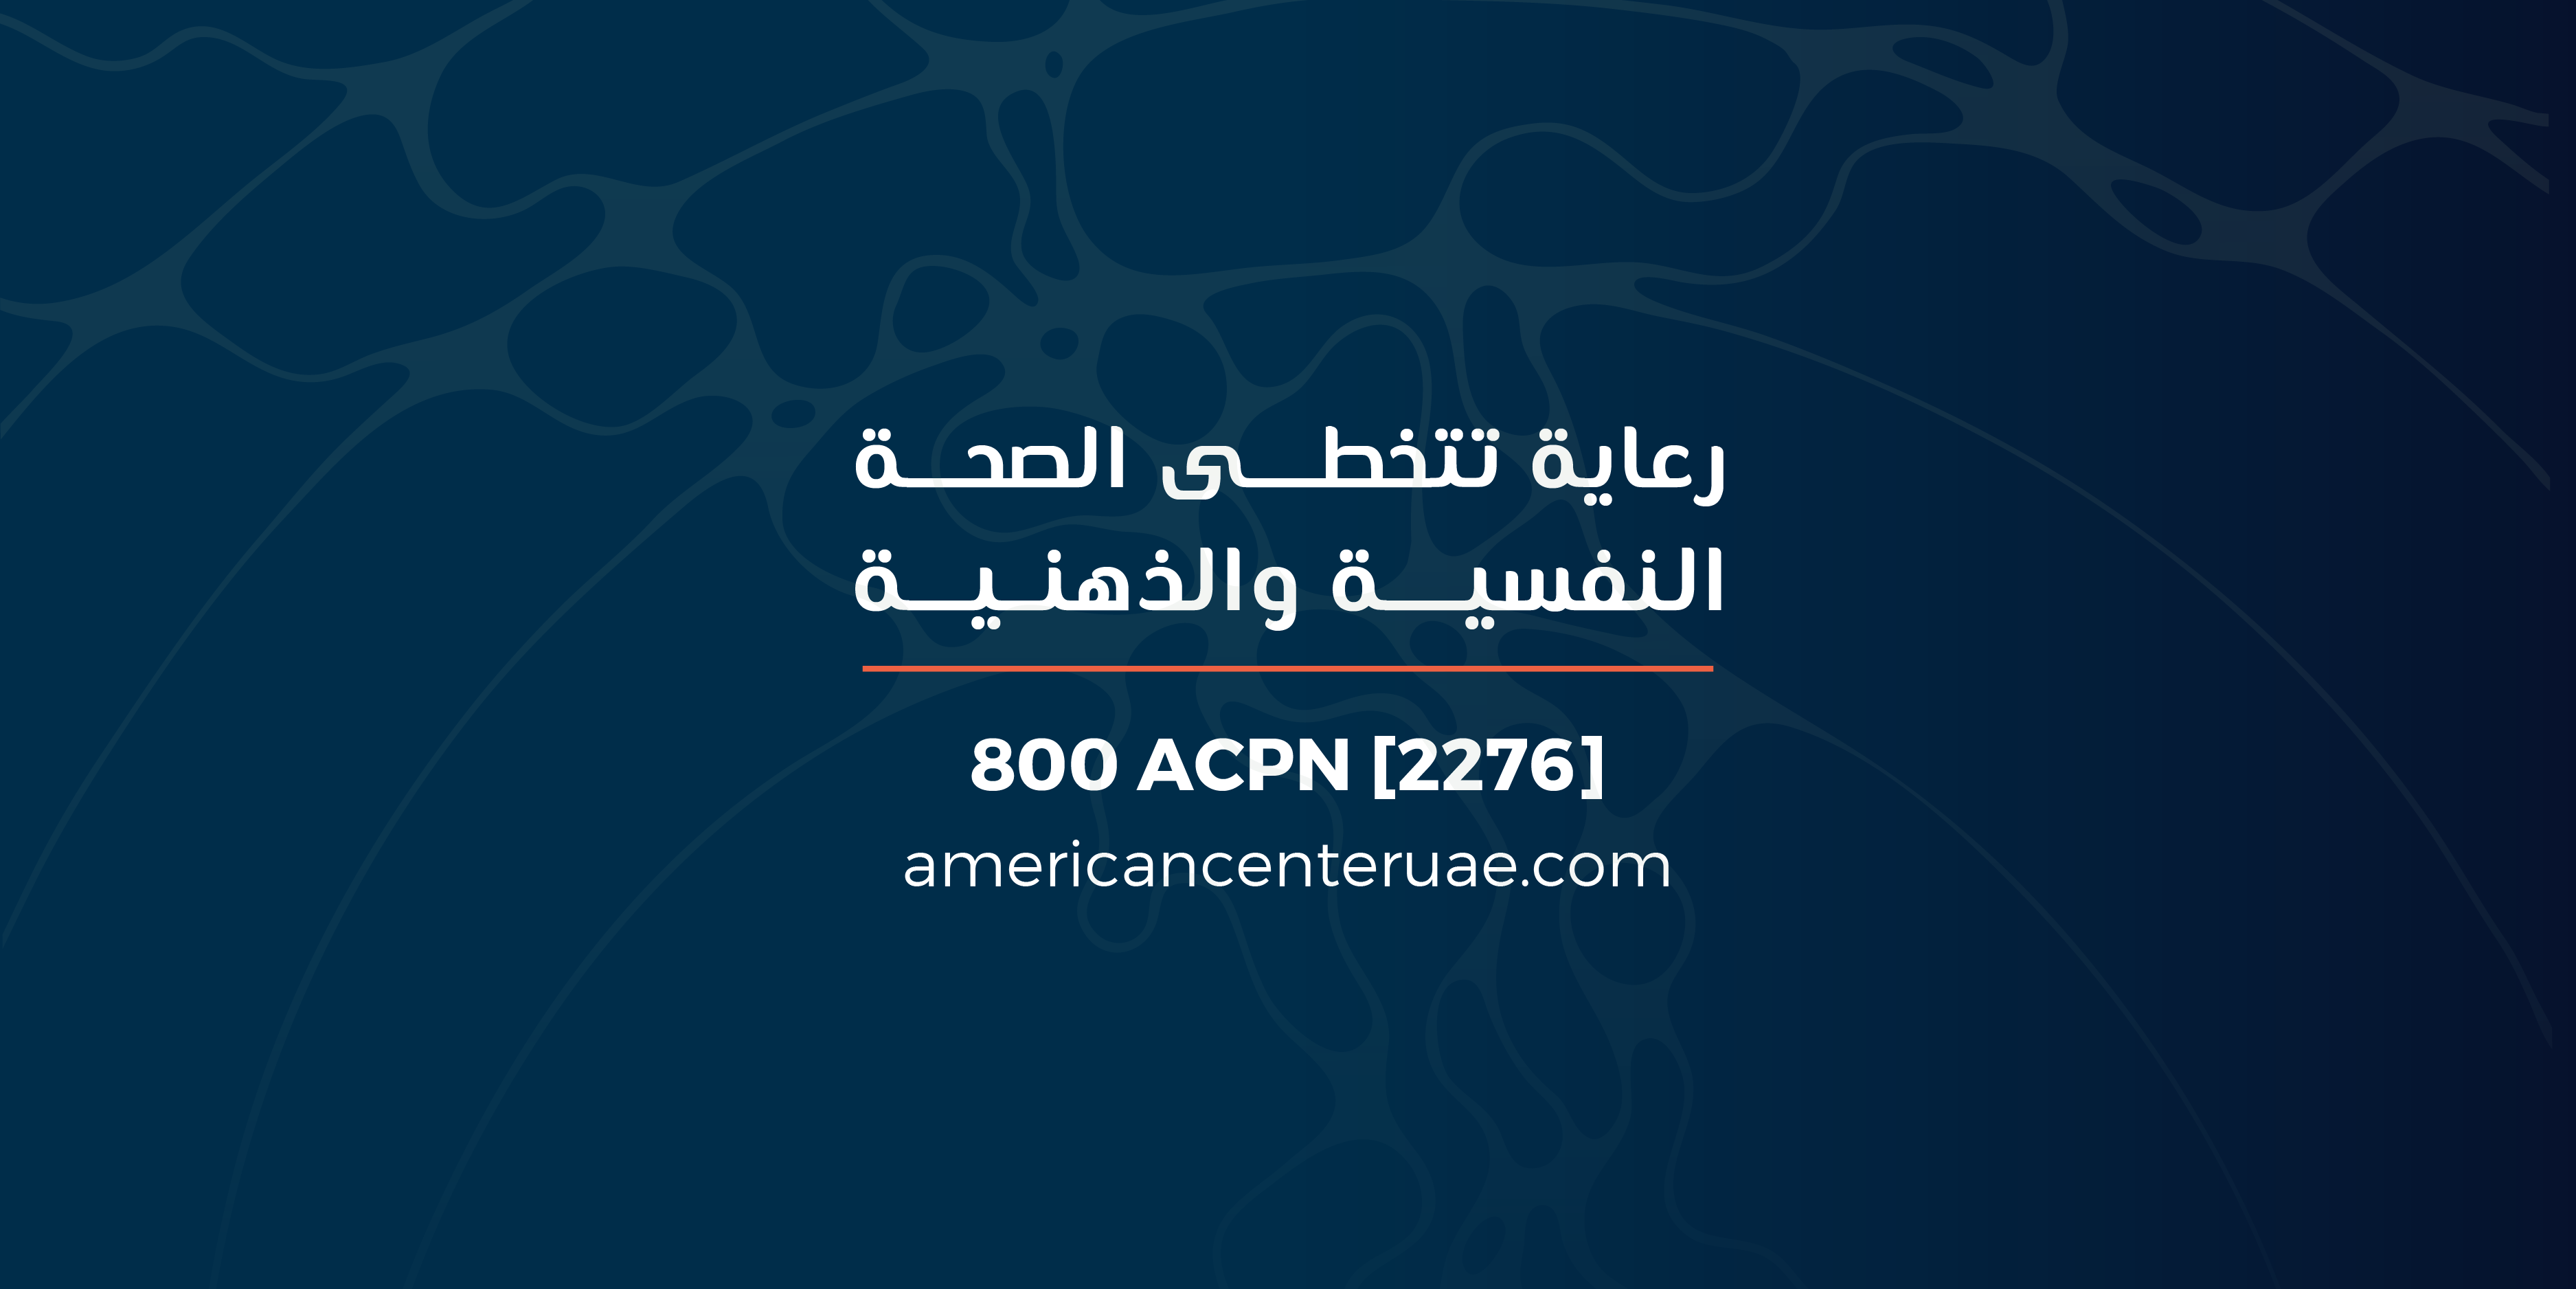 ACPN-Website banner-01-2